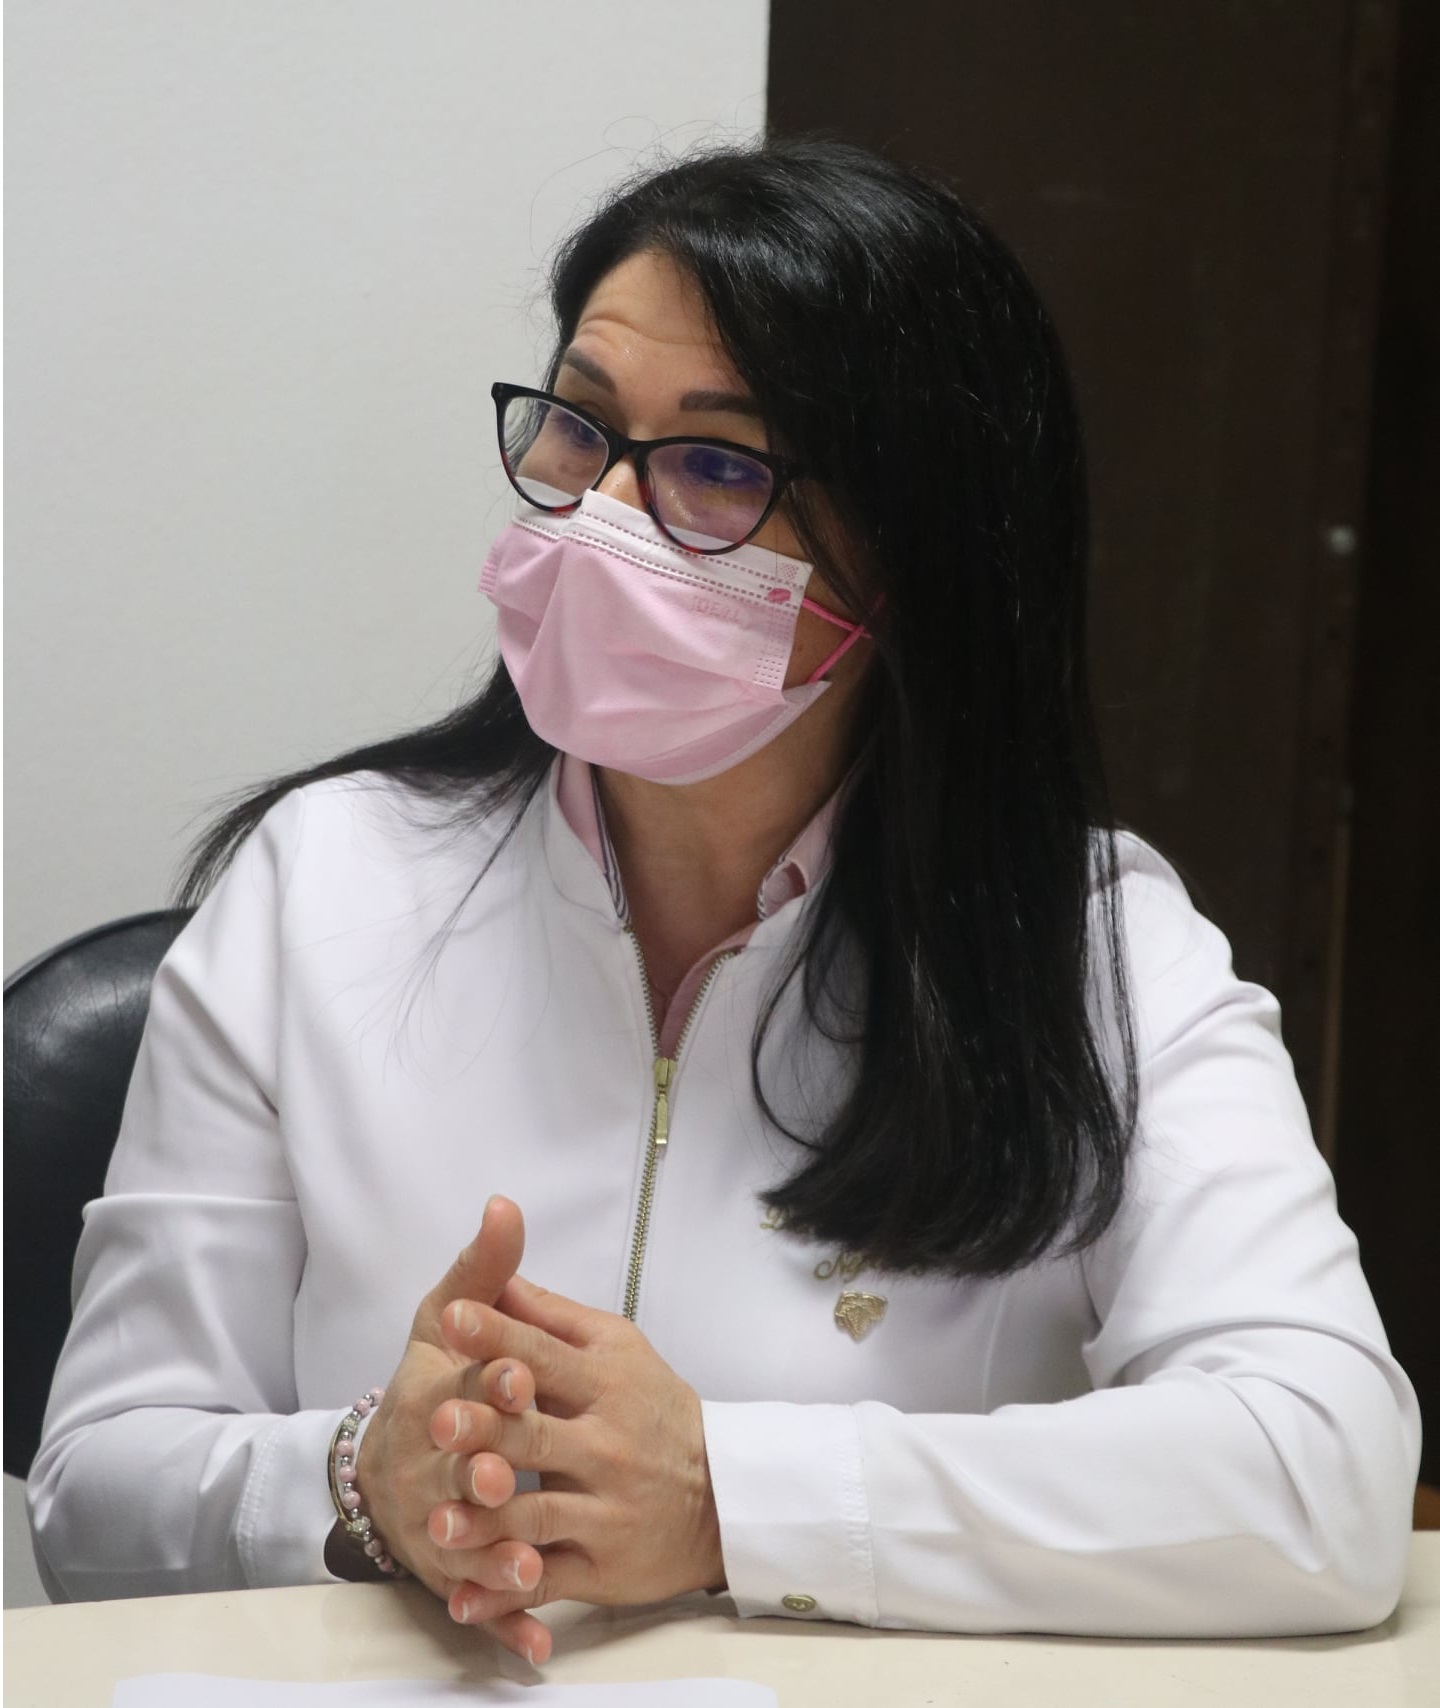 La Dra. Norma Arévalos, especialista del departamento de Nefrología de Adultos del Hospital de Clínicas